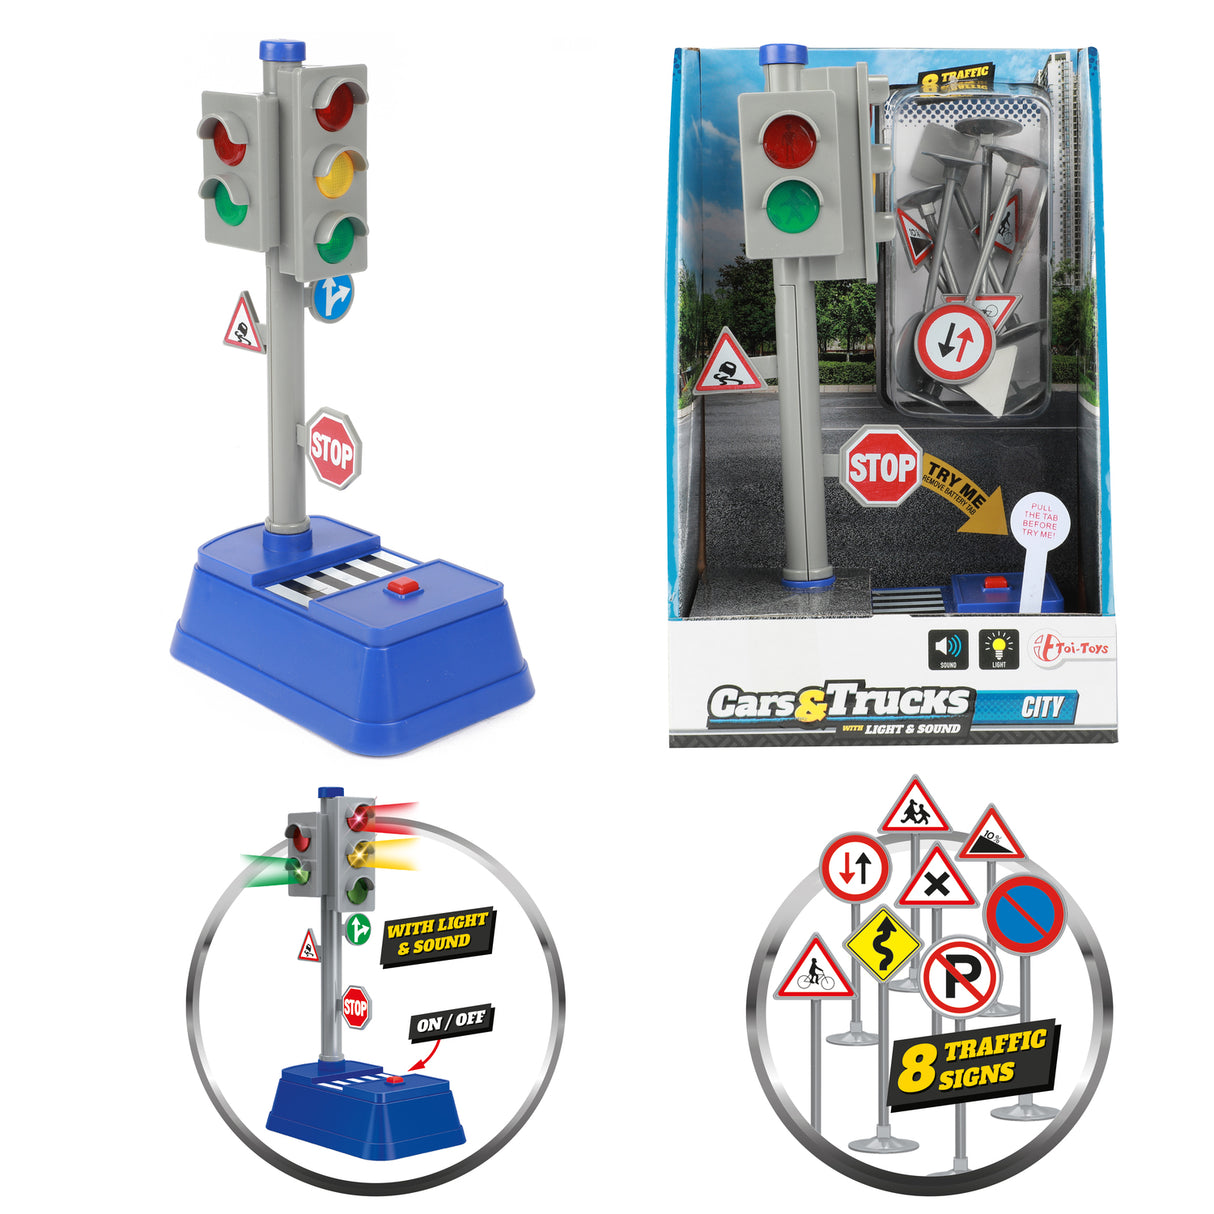 Ampel und Verkehrsschilder Spielzeug mit Licht und Sound - Jetzt kaufen und  spielen! –